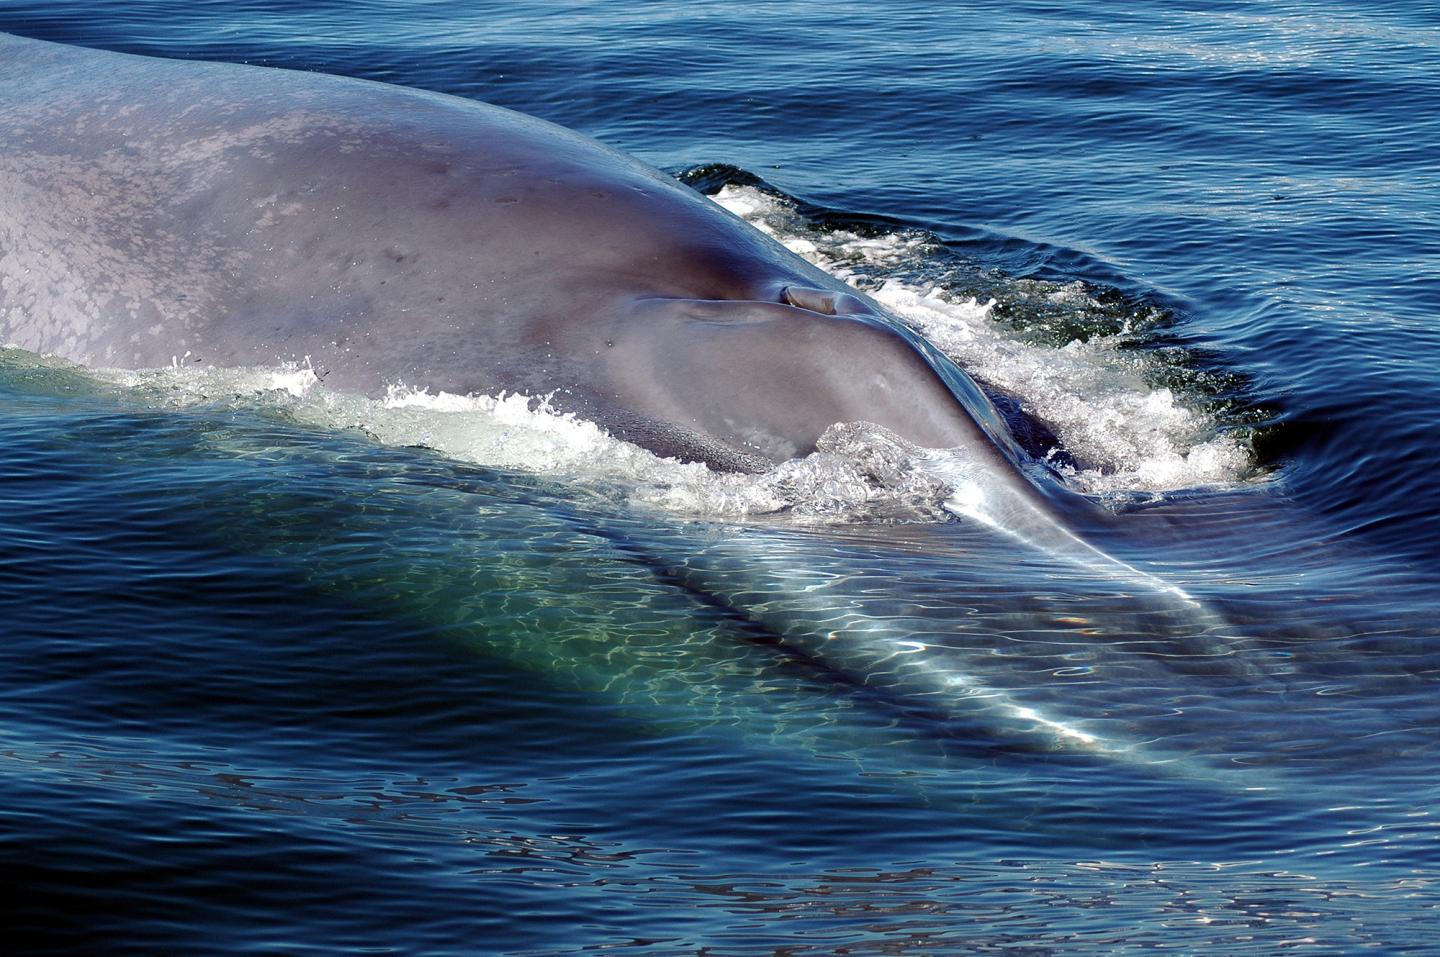 Масса синего кита достигает. Голубой кит Balaenoptera musculus. Синий кит (голубой кит). Синий кит блювал. Блювал (голубой или синий кит).